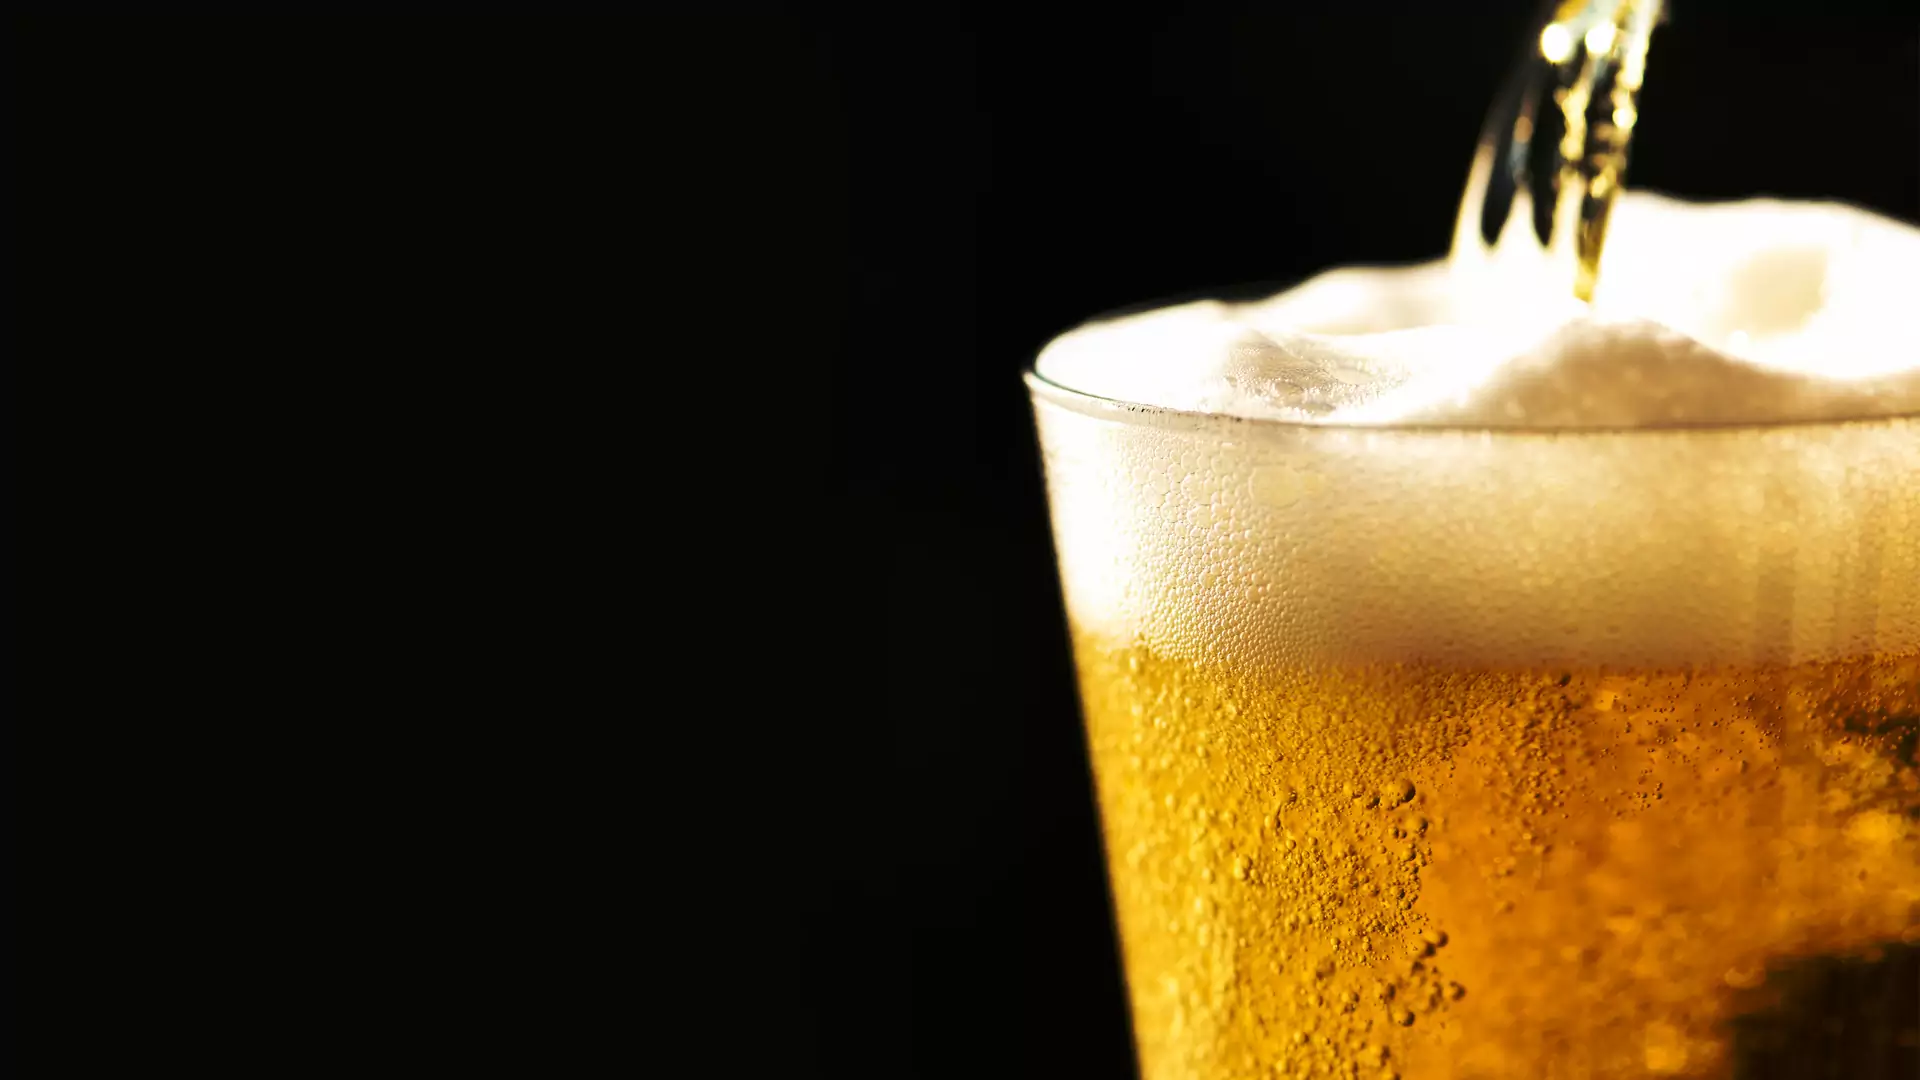 Piwo dobrze wpływa na serce. Naukowcy radzą je pić codziennie i mówią: "Mięsień piwny to bujda!"